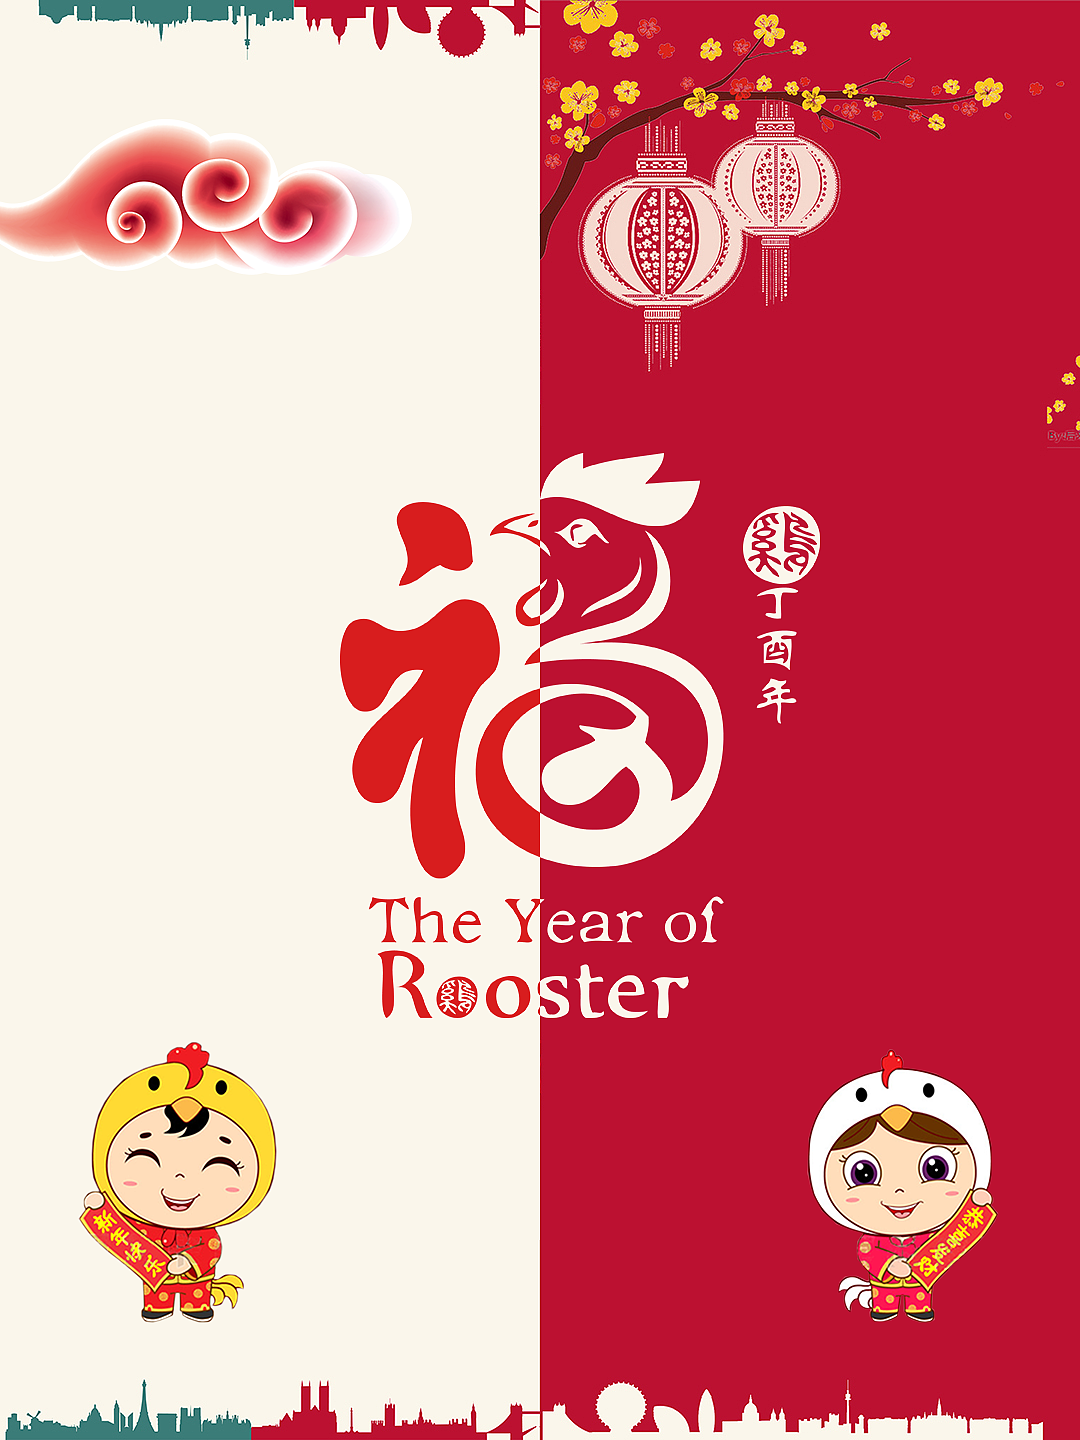 红黄色卡通狮子矢量新年节日庆祝中文贺卡 - 模板 - Canva可画